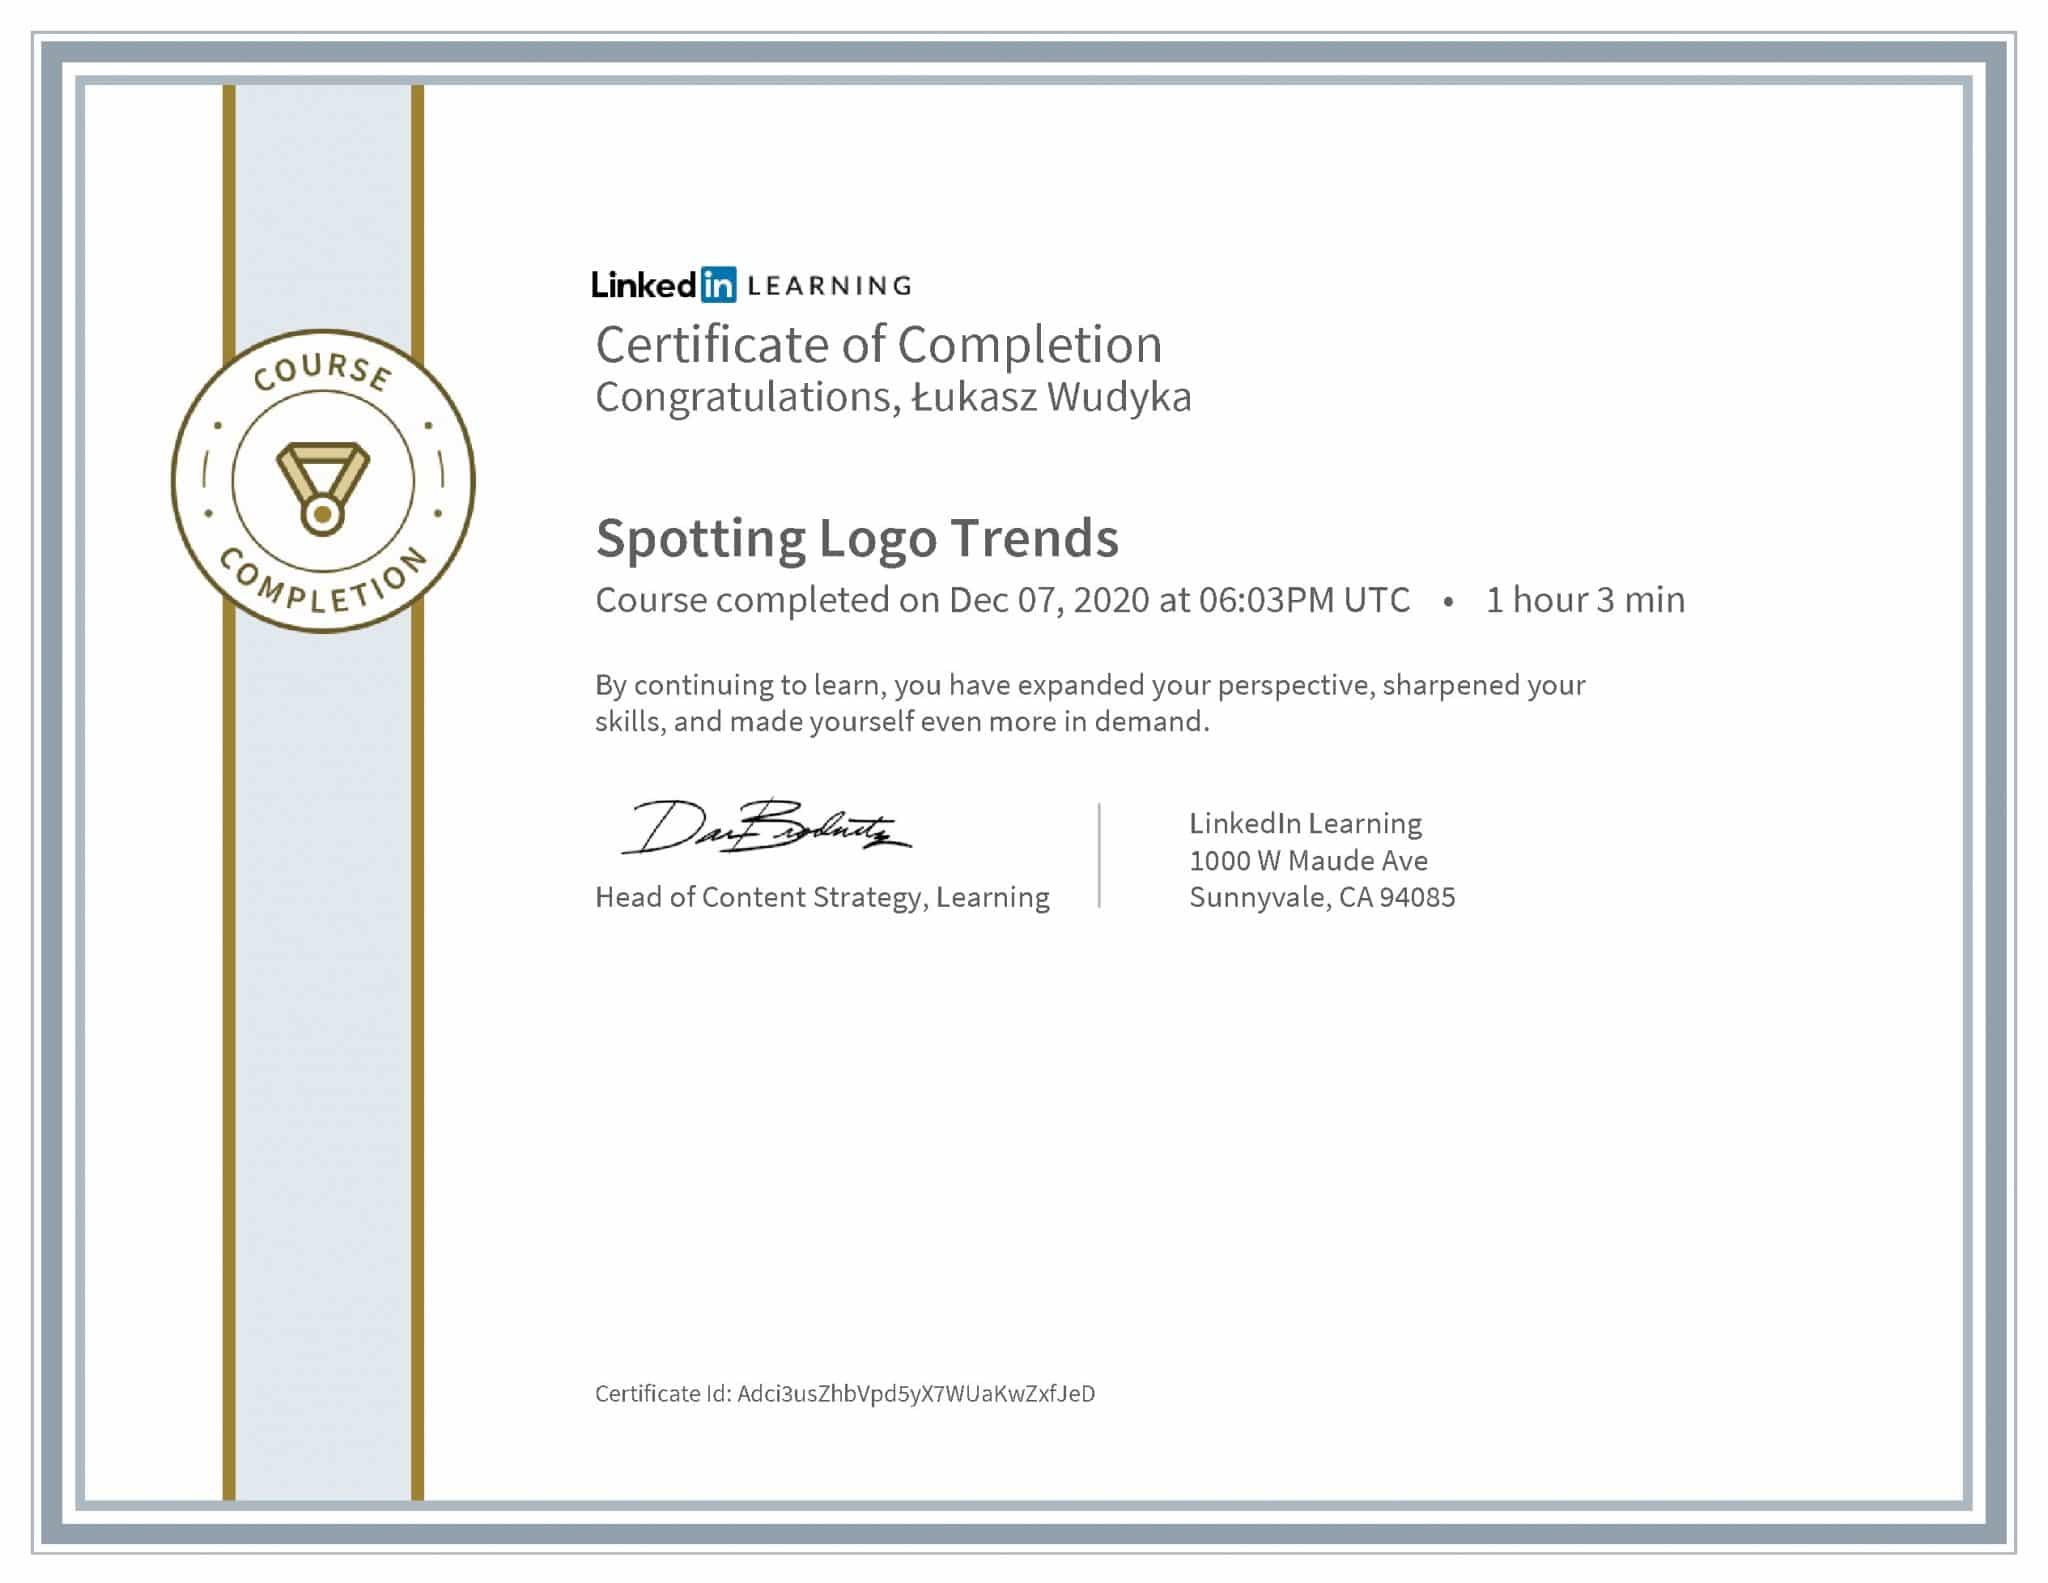 Łukasz Wudyka certyfikat LinkedIn Spotting Logo Trends